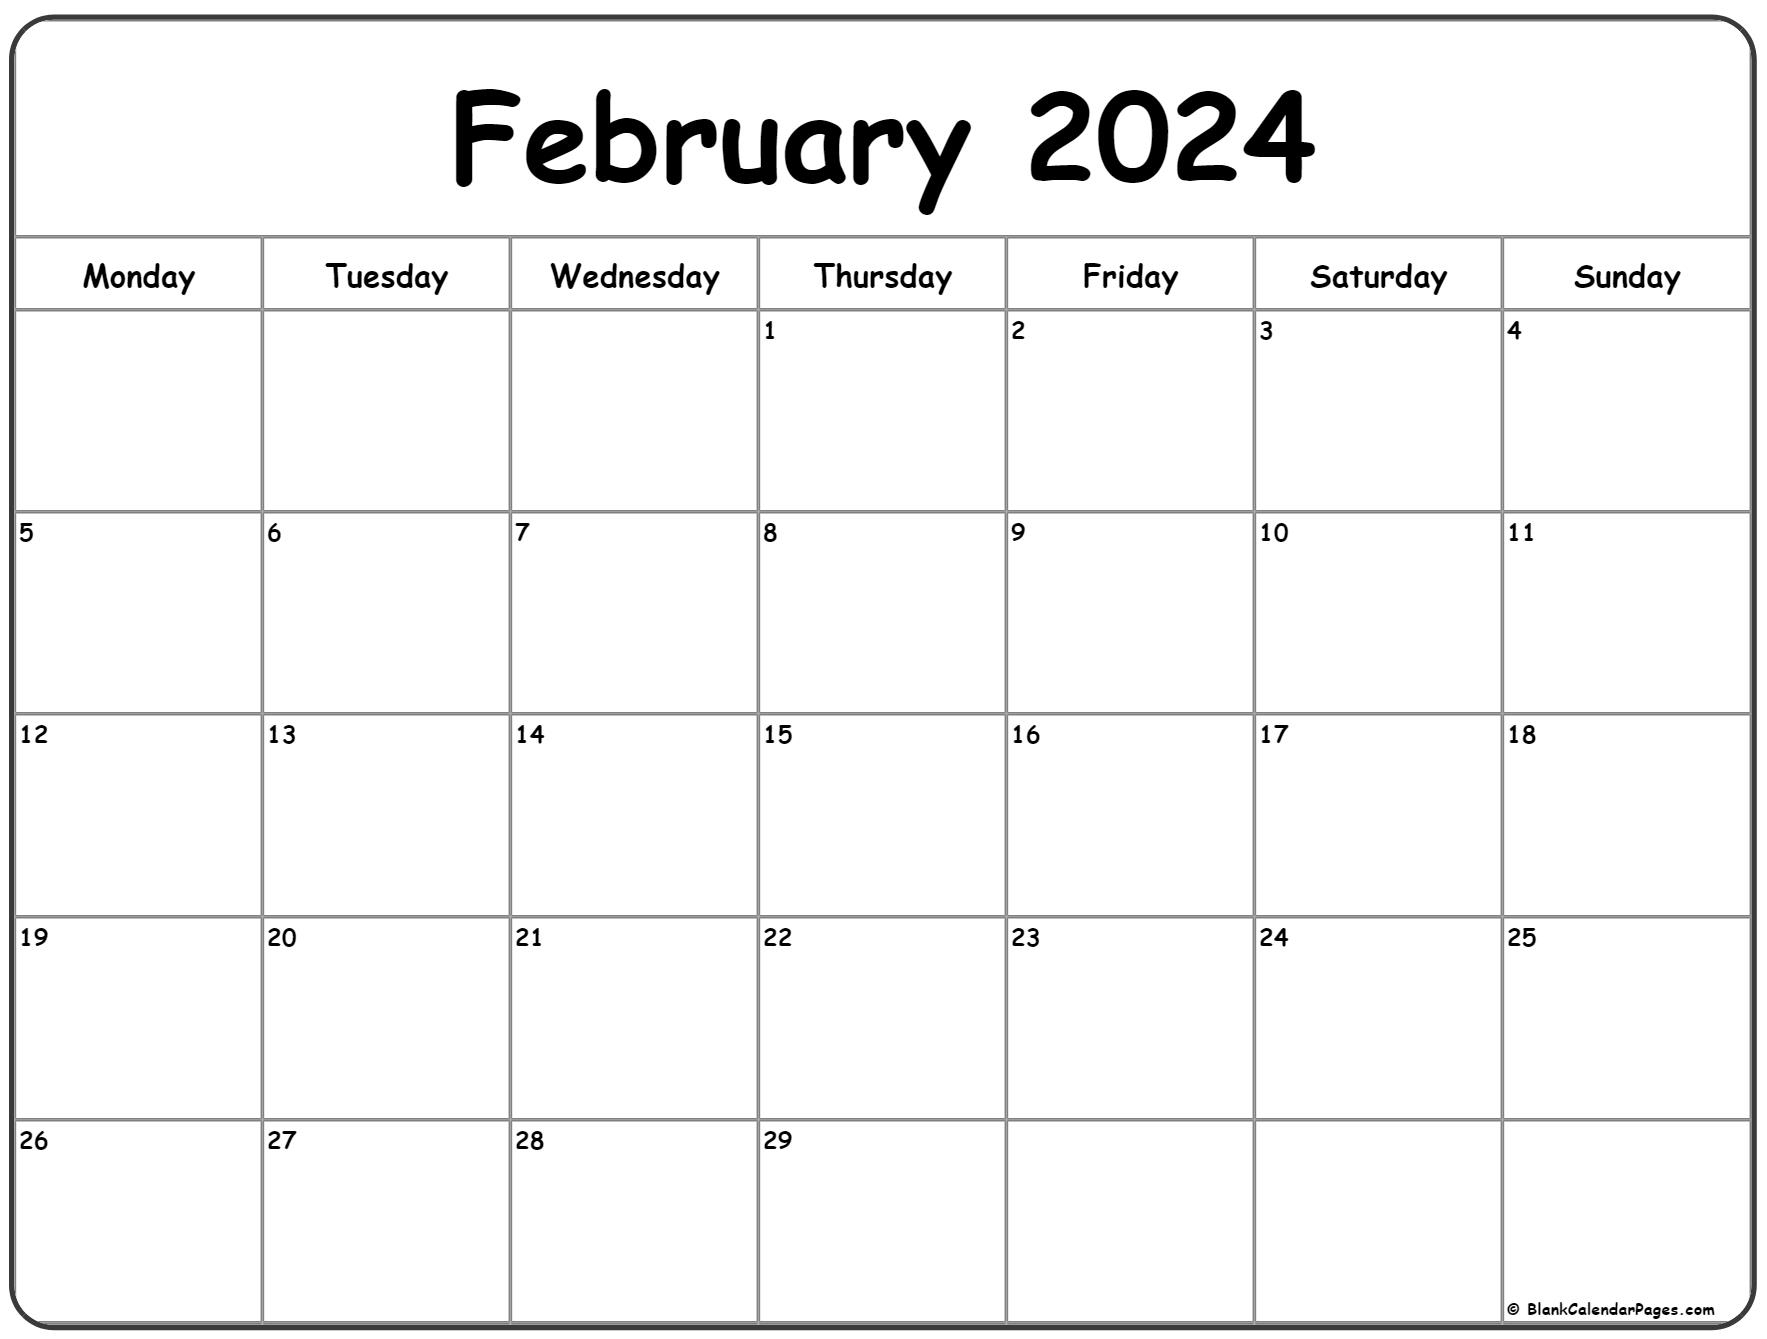 February 2024 Monday Calendar | Monday To Sunday for Printable Calendar 2024 February